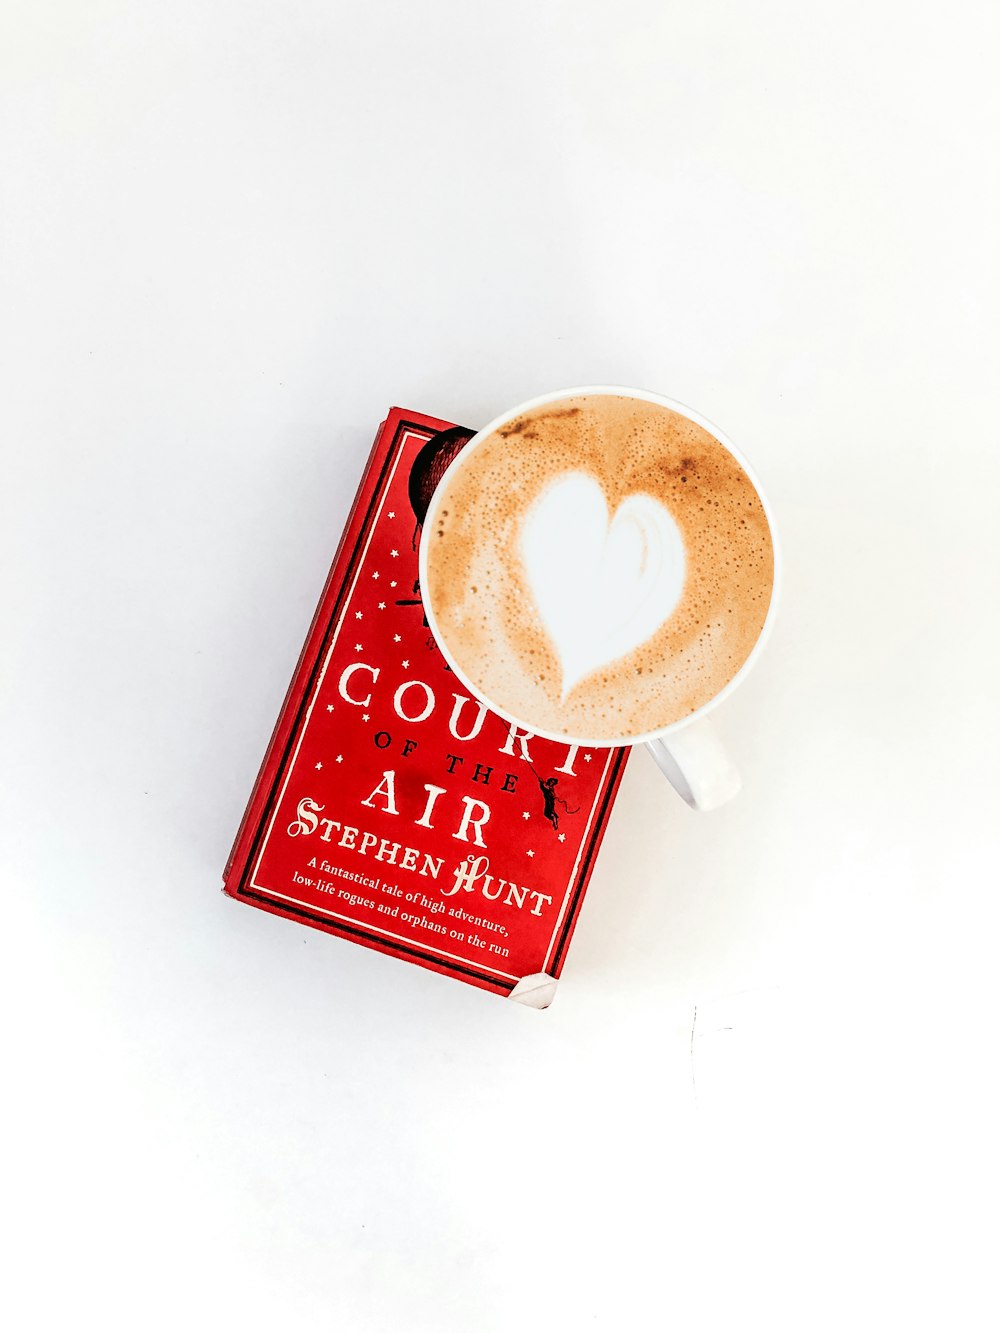 スティーブン・ハントの本による赤いコートエアの上に丸い白いセラミックカップ